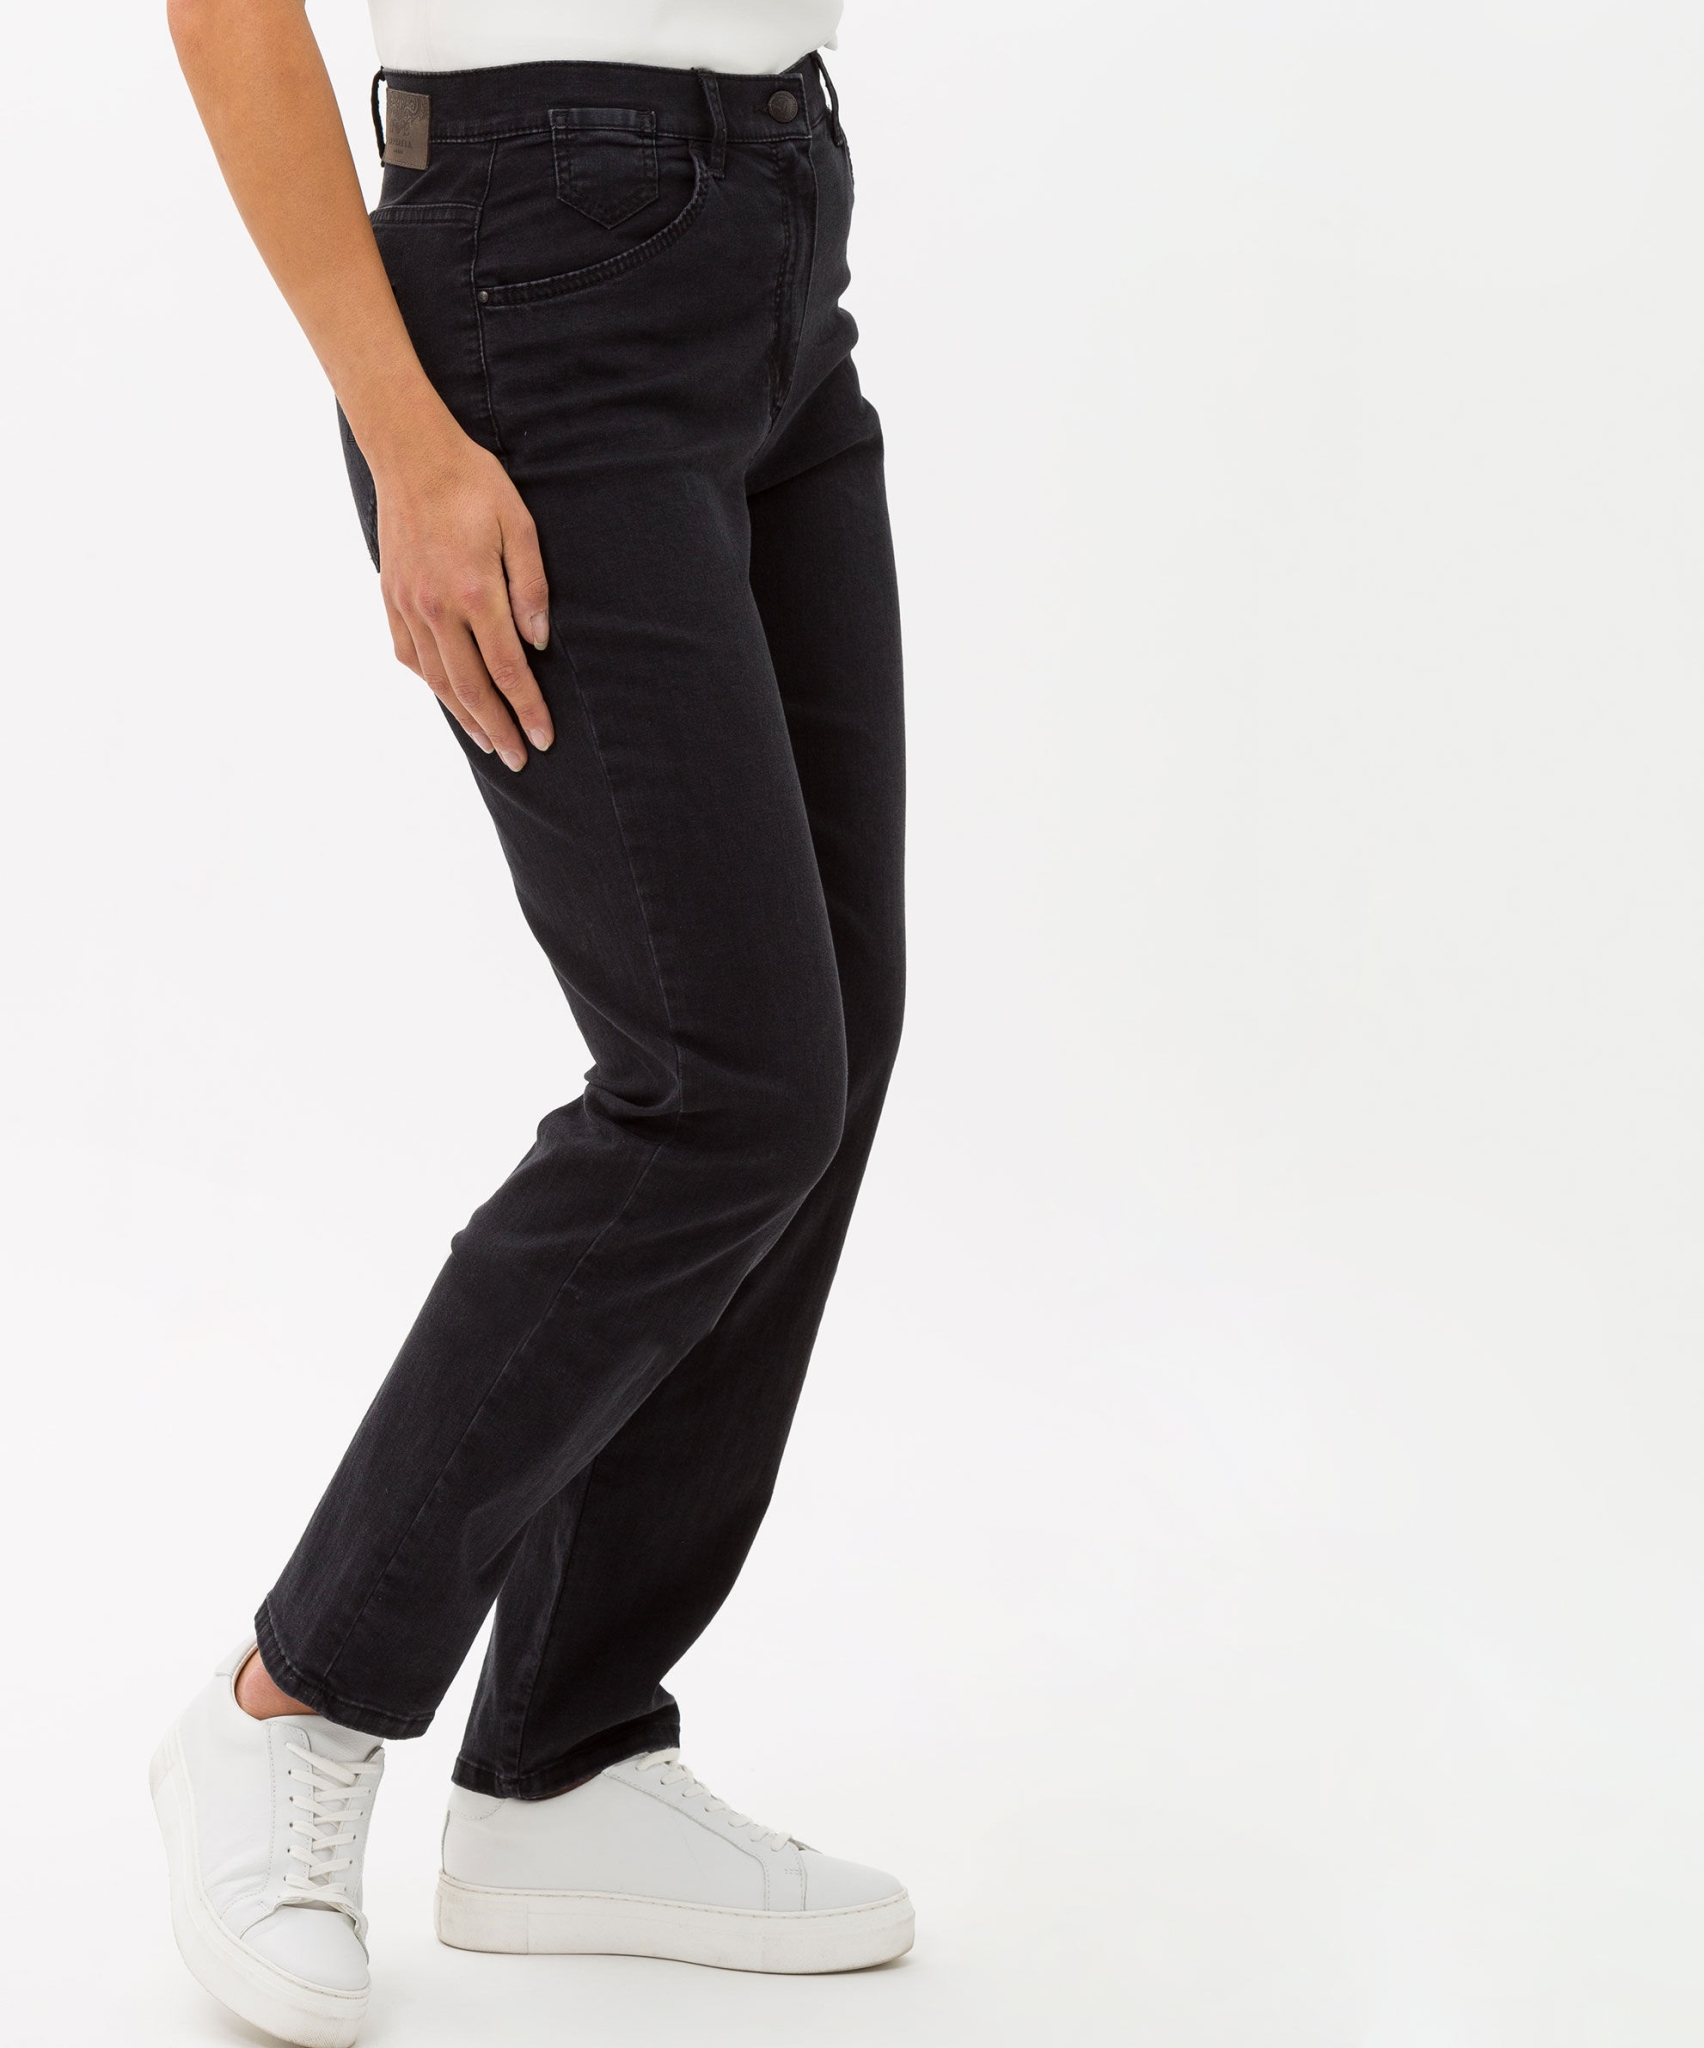 RAPHAELA BY BRAX Jeans in hochelastischer Dynamic-Qualität 10626976